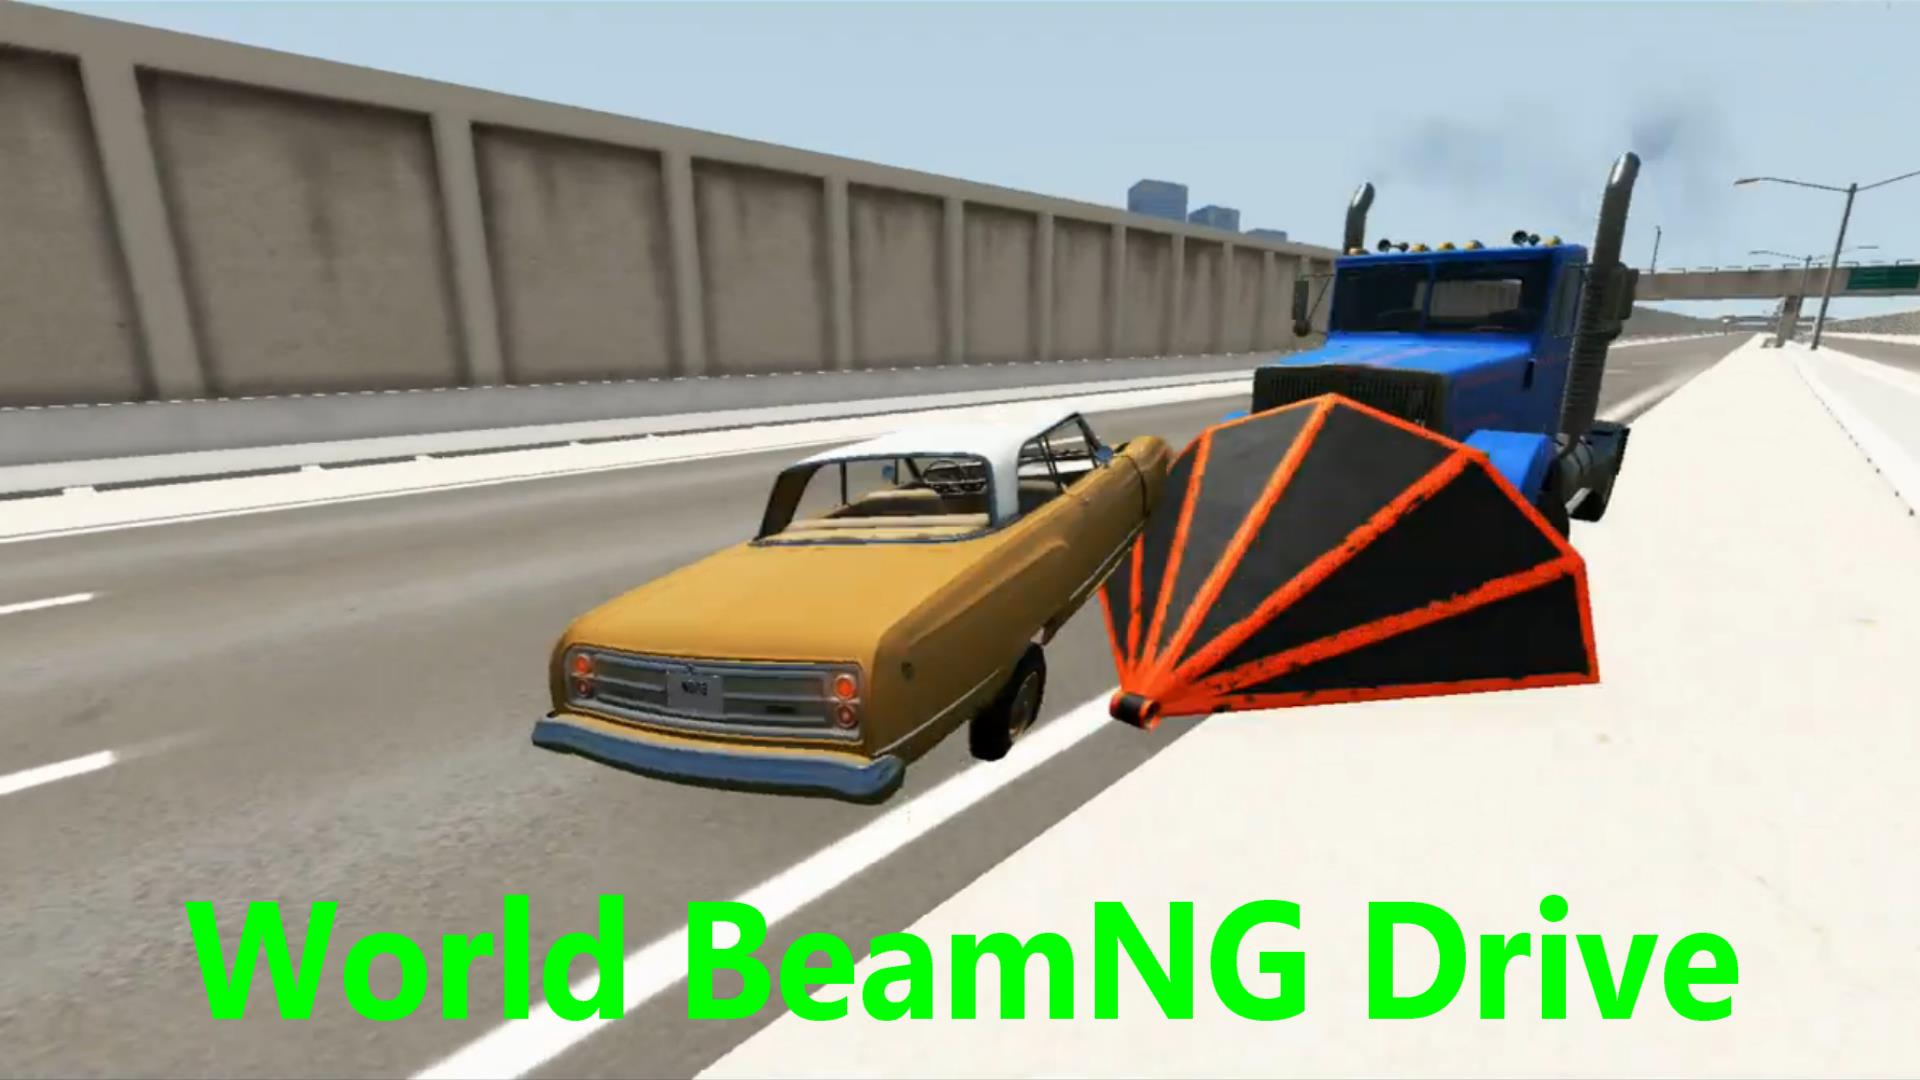 Грузовик на скорости #1 - BeamNG Drive | World BeamNG Drive